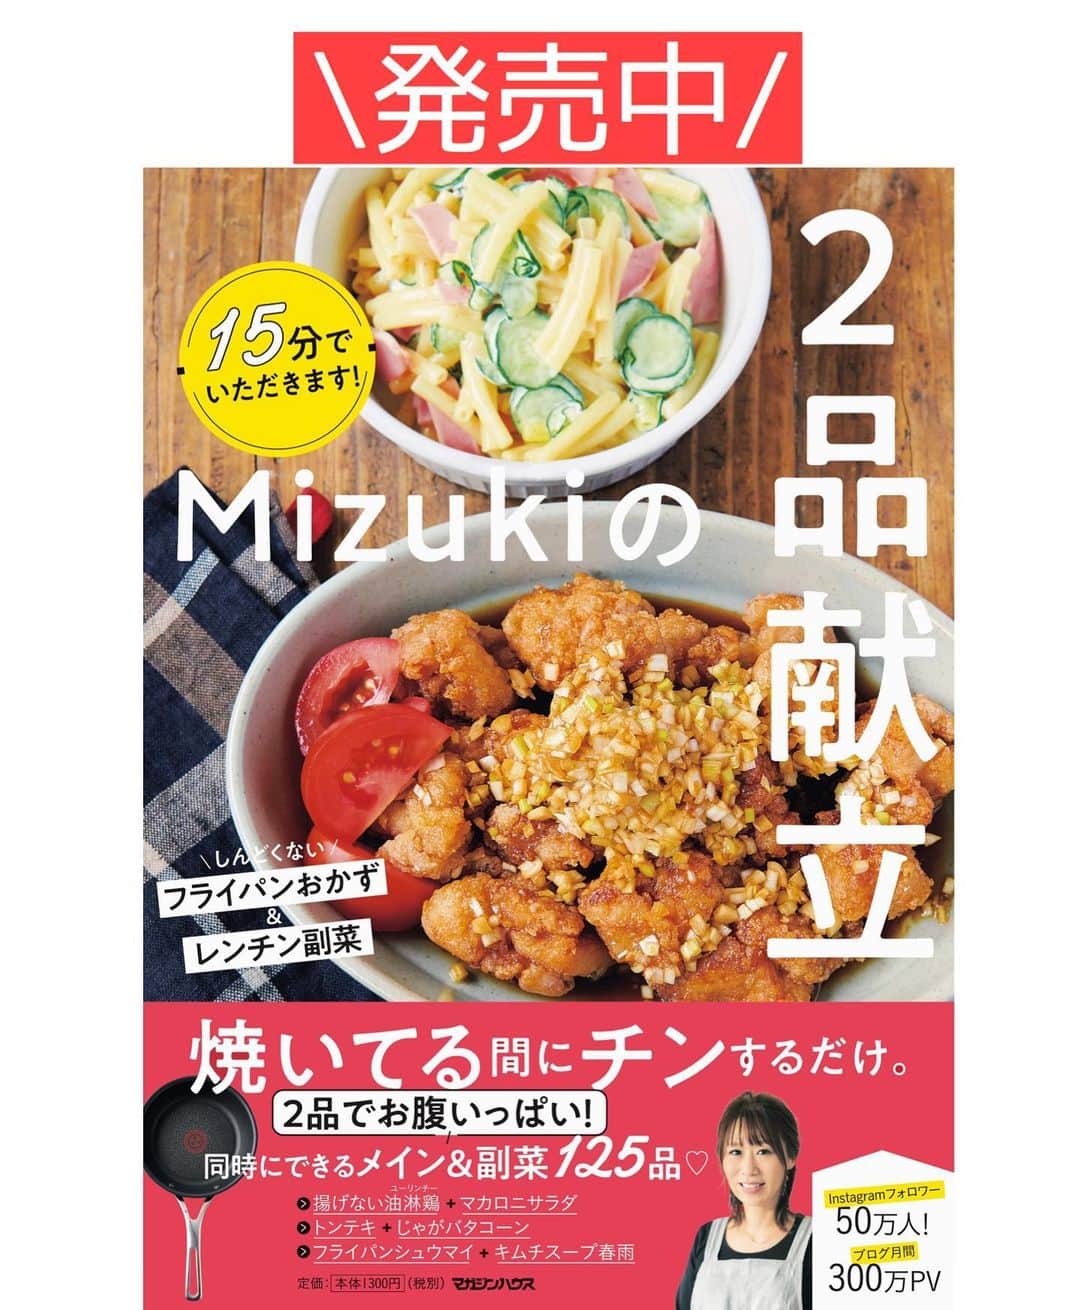 Mizuki【料理ブロガー・簡単レシピ】さんのインスタグラム写真 - (Mizuki【料理ブロガー・簡単レシピ】Instagram)「・﻿ 【#レシピ 】ーーーーーーーーーー﻿ ♡ひき肉とニラのとろ玉スープ♡﻿ ーーーーーーーーーーーーーーーー﻿ ﻿ ﻿ ﻿ おはようございます(*^^*)﻿ ﻿ 今日はあったかスープレシピ☆﻿ 具沢山おかずスープのご紹介です♩﻿ ひき肉のコクにニラの香り﻿ たまごの優しい風味が好相性♡﻿ スープにとろみを付けるから﻿ たまごがふ〜んわり仕上がりますよ♩﻿ ﻿ これ、ごはんにかけて﻿ スープごはんにするのもおすすめ♡﻿ とっても簡単にできるので﻿ よかったらお試し下さいね(*´艸`)﻿ ﻿ ﻿ ﻿ ＿＿＿＿＿＿＿＿＿＿＿＿＿＿＿＿＿＿＿＿﻿ 【2人分】﻿ 豚ひき肉...100g﻿ ニラ...1/2束﻿ 卵...1個﻿ ごま油...小1﻿ 片栗粉...小2﻿ ●水...400ml﻿ ●鶏がらスープ...大1/2﻿ ●醤油...小1﻿ ●塩こしょう...少々﻿ いりごま...少々﻿ ﻿ 1.ニラは4cm長さに切る。卵は溶きほぐす。片栗粉は水大1(分量外)で溶いて水溶き片栗粉を作る。﻿ 2.鍋にごま油を中火で熱してひき肉を炒める。色が変わったら●を加え、煮たったらニラを加えてさっと煮る。﻿ 3.水溶き片栗粉を加えてとろみを付け、溶き卵を回し入れ、ふんわりしたら火を止める。仕上げにごまを振る。﻿ ￣￣￣￣￣￣￣￣￣￣￣￣￣￣￣￣￣￣￣￣﻿ ﻿ ﻿ ﻿ 《ポイント》﻿ ♦︎水溶き片栗粉を加えたら手早く混ぜてとろみを付けて下さい♩﻿ ﻿ ﻿ ﻿ ﻿ ﻿ ﻿ ﻿ ﻿ ⭐️発売中⭐️3刷重版が決まりました😭﻿ 本当にありがとうございます(涙)﻿ _____________________________________﻿ \15分でいただきます/﻿ 📕#Mizukiの2品献立 📕﻿ (9月24日発売・マガジンハウス)﻿ ￣￣￣￣￣￣￣￣￣￣￣￣￣￣￣￣￣﻿ ﻿ 忙しい私たちには﻿ 2品くらいがちょうどいい！﻿ 『しんどくない献立、考えました』﻿ ￣￣￣￣￣￣￣￣￣￣￣￣￣￣￣￣﻿ ﻿ ーーーーーPART.1 ーーーーー﻿ 【Mizukiのお墨つき！２品献立ベスト10】﻿ 約15分でできる10献立をご紹介！﻿ メインは全部フライパン、副菜はレンチンor混ぜるだけ♡﻿ ﻿ ーーーーーPART.2 ーーーーー﻿ 【フライパンひとつ！今夜のメインおかず】﻿ 献立の主役になる肉や魚のおかず50品！﻿ Part3の副菜と組み合わせれば﻿ 献立のバリエーションが広がりますよ♩﻿ ﻿ ーーーーー PART.3 ーーーーー﻿ 【合間に作れる！ 野菜別かんたん副菜】﻿ レンチンor和えるだけの副菜レシピを﻿ 素材別にたっぷり収録♩﻿ ﻿ ーーーーー番外編ーーーーー﻿ 【ひとつで満足！ご飯＆麺】﻿ 【具だくさん！おかずスープ】﻿ 【オーブンいらずのおやつレシピ】﻿ ￣￣￣￣￣￣￣￣￣￣￣￣￣￣￣￣￣￣﻿ (ハイライトにリンク🔗あります💗)﻿ ﻿ ﻿ ﻿ ﻿ ＿＿＿＿＿＿＿＿＿＿＿＿＿＿＿＿＿＿﻿ 🔔テレビ出演のお知らせ🔔﻿ 10月12日〜22日までの2週間(月〜木)﻿ 【NHK Eテレ まる得マガジン 】が﻿ 再放送されています☺️﻿ 俳優の武田航平さん﻿ (@kouhei_takeda.official )と一緒に﻿ 絶品おやつから意外なランチまで﻿ たくさん作らせていただきますよ♩﻿ ﻿ ＊NHKテキスト発売中です📕﻿ ￣￣￣￣￣￣￣￣￣￣￣￣￣￣￣￣￣￣﻿ ﻿ ﻿ ﻿ ﻿ ﻿ レシピを作って下さった際や﻿ レシピ本についてのご投稿には﻿ タグ付け( @mizuki_31cafe )して﻿ お知らせいただけると嬉しいです😊💕﻿ ﻿ ﻿ ﻿ ﻿ ﻿ ﻿ #スープ#おかずスープ#ひき肉#卵#Mizuki#簡単レシピ#時短レシピ#節約レシピ#料理#フーディーテーブル#マカロニメイト#おうちごはん#デリスタグラマー#料理好きな人と繋がりたい#食べ物#料理記録#おうちごはんlover#写真好きな人と繋がりたい#foodpic#cooking#recipe#lin_stagrammer#foodporn#yummy#f52grams#ひき肉とニラのとろ玉スープm」10月18日 9時50分 - mizuki_31cafe